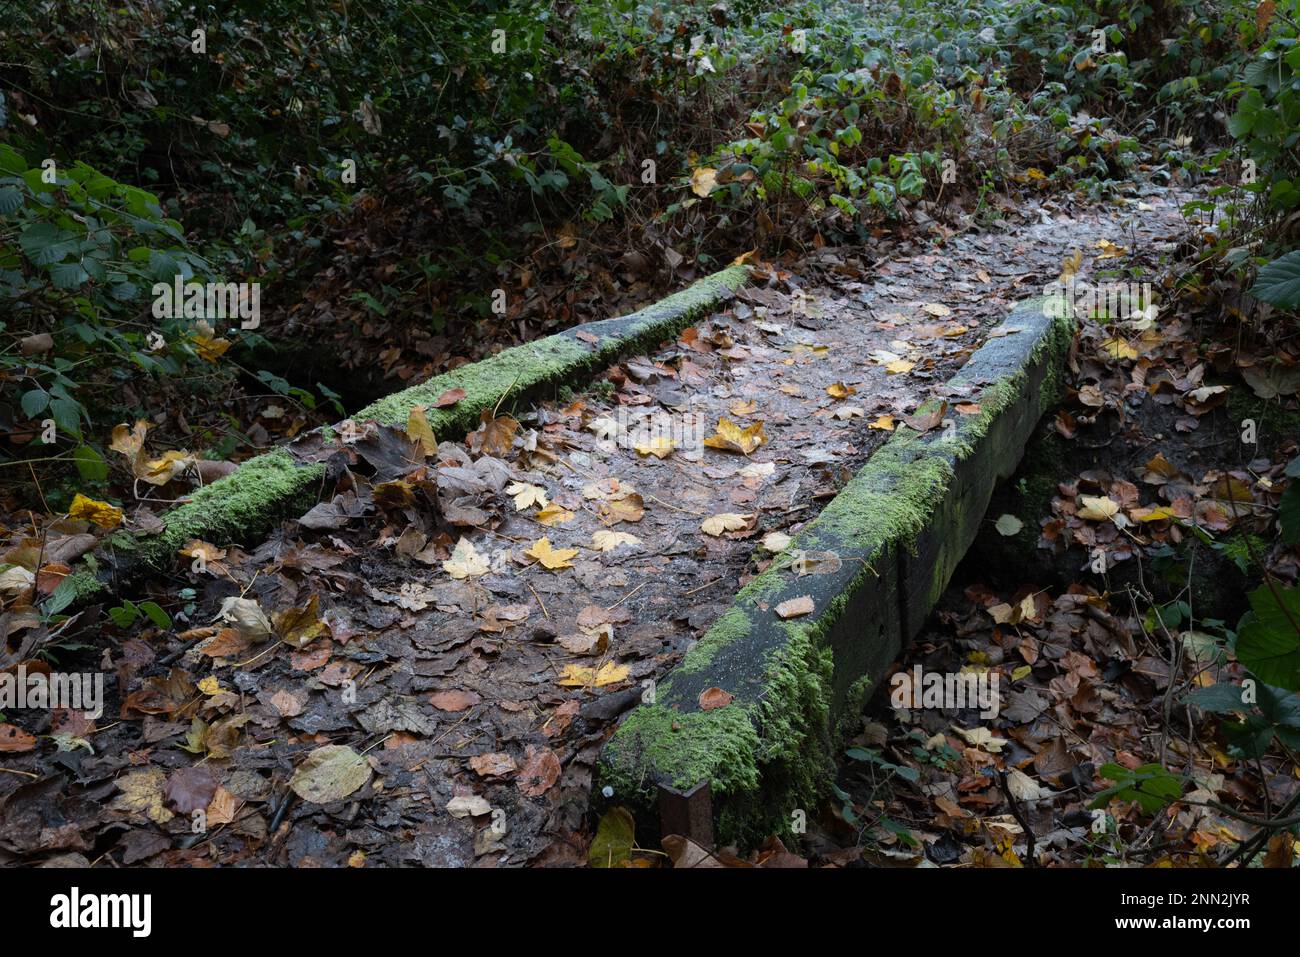 Ponte di pietra molto vecchio e storico visto in profondità in una zona boschiva inglese, coperto di muschio scivoloso e foglie cadute. Foto Stock